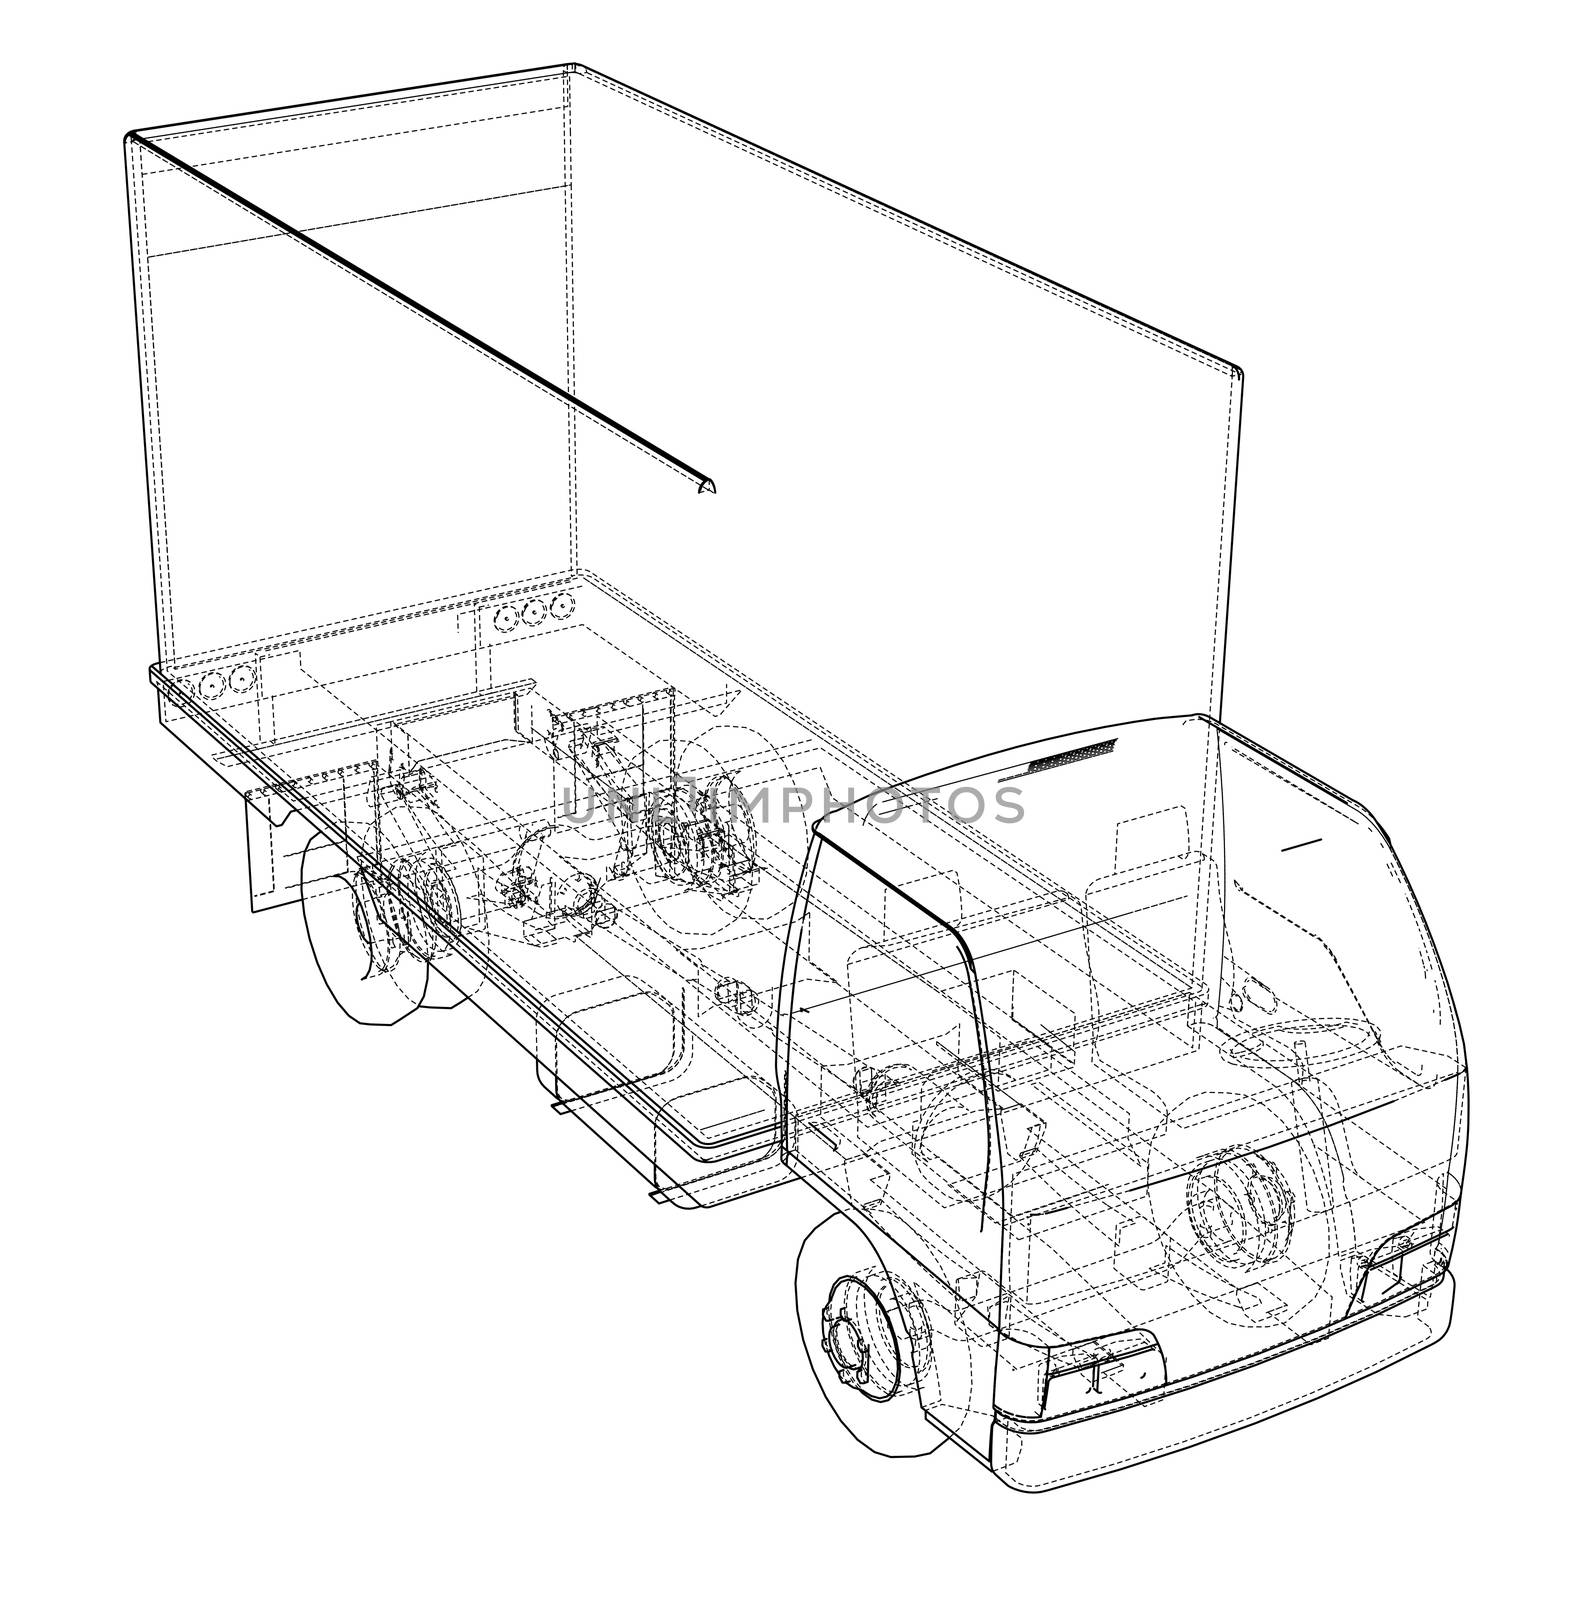 Concept mini truck sketch by cherezoff